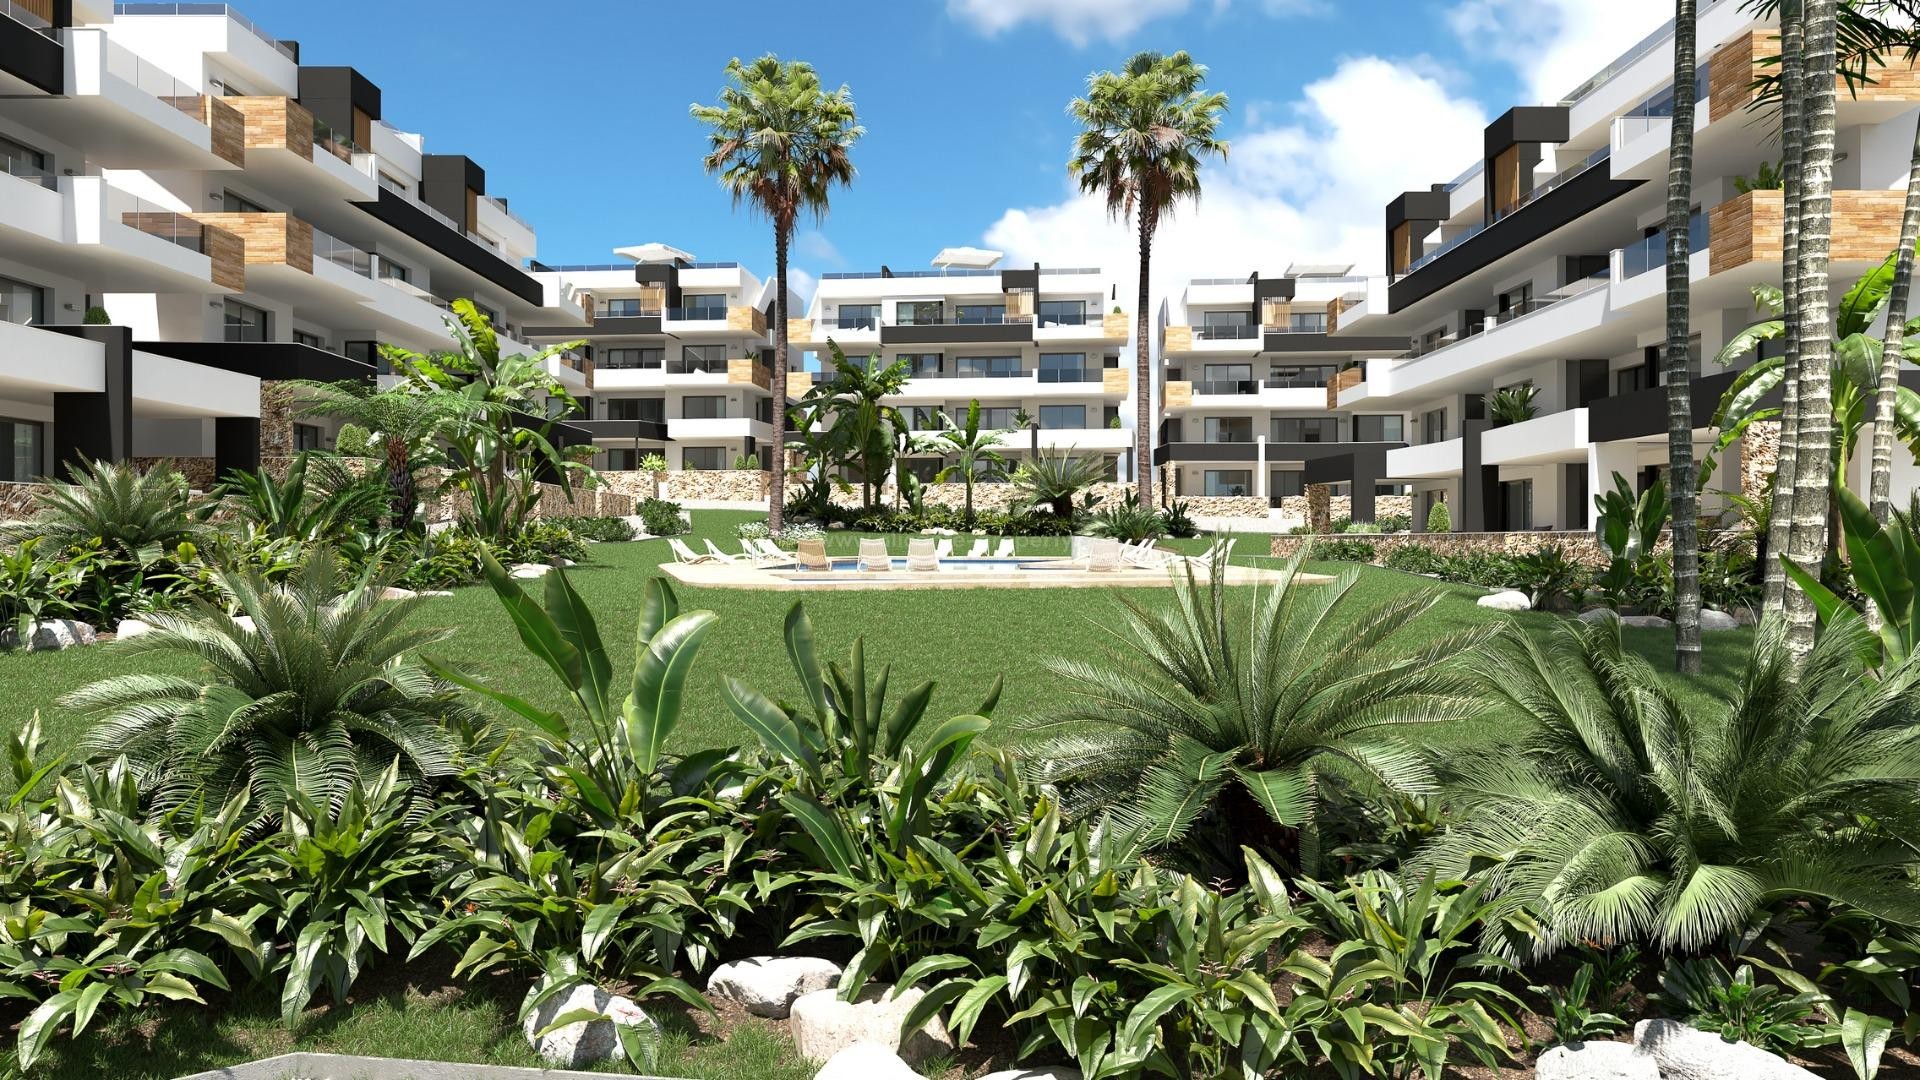 Nytt leilighets-kompleks i Los Altos, Orihuela Costa,2 soverom, 2 bad,terrasser eller solarium, felles basseng, treningsstudio og lekeplass.eller solarium